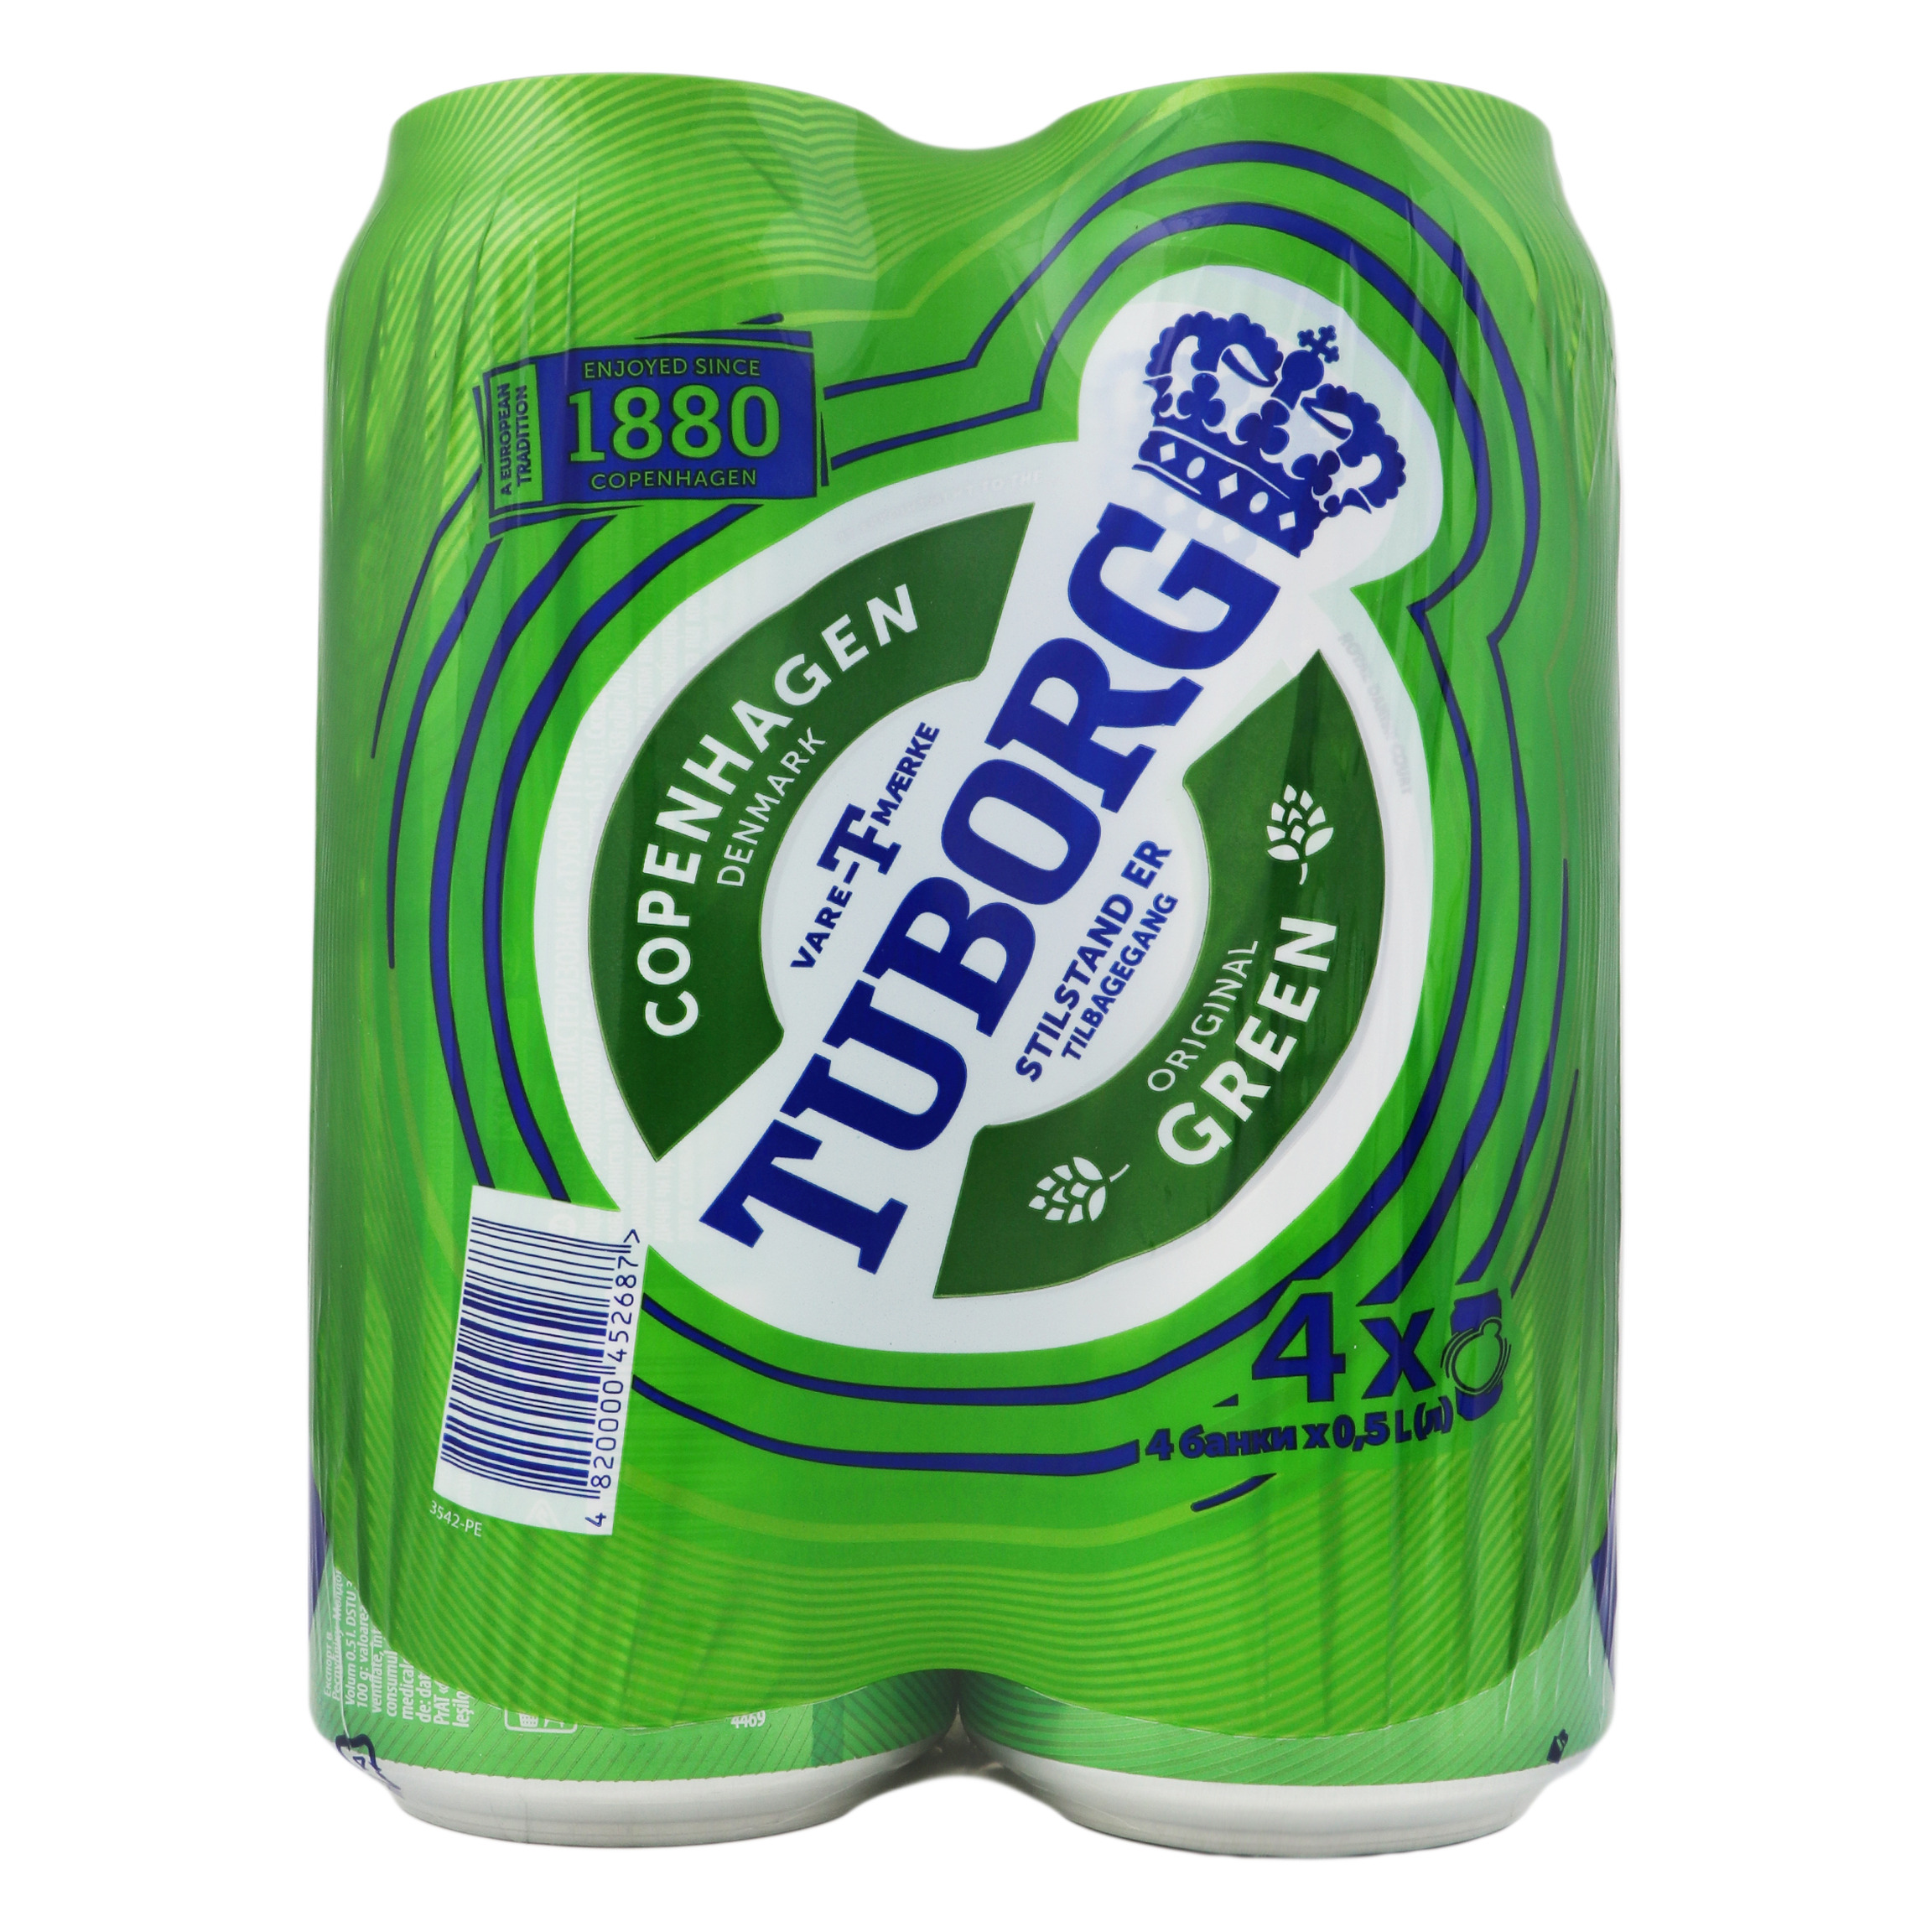 Набір пива Tuborg Green світле 4,6% 4*0,5л залізна банка